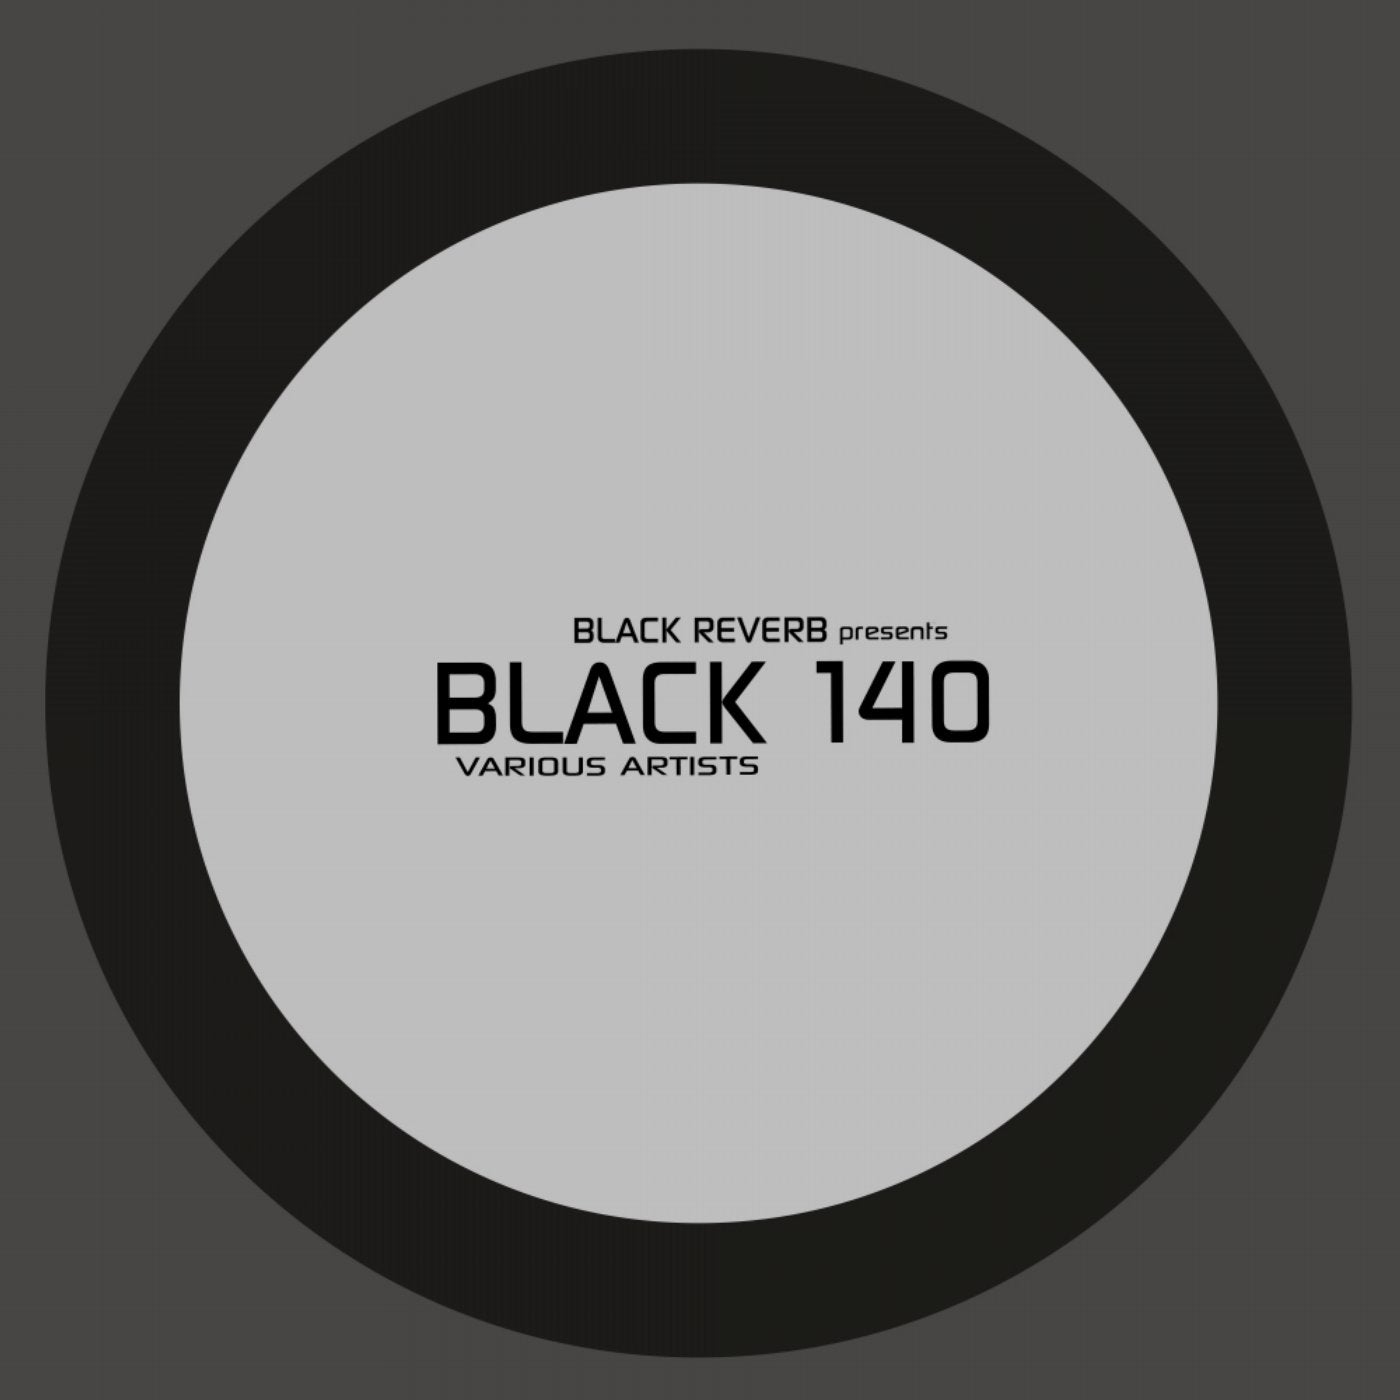 Black 140